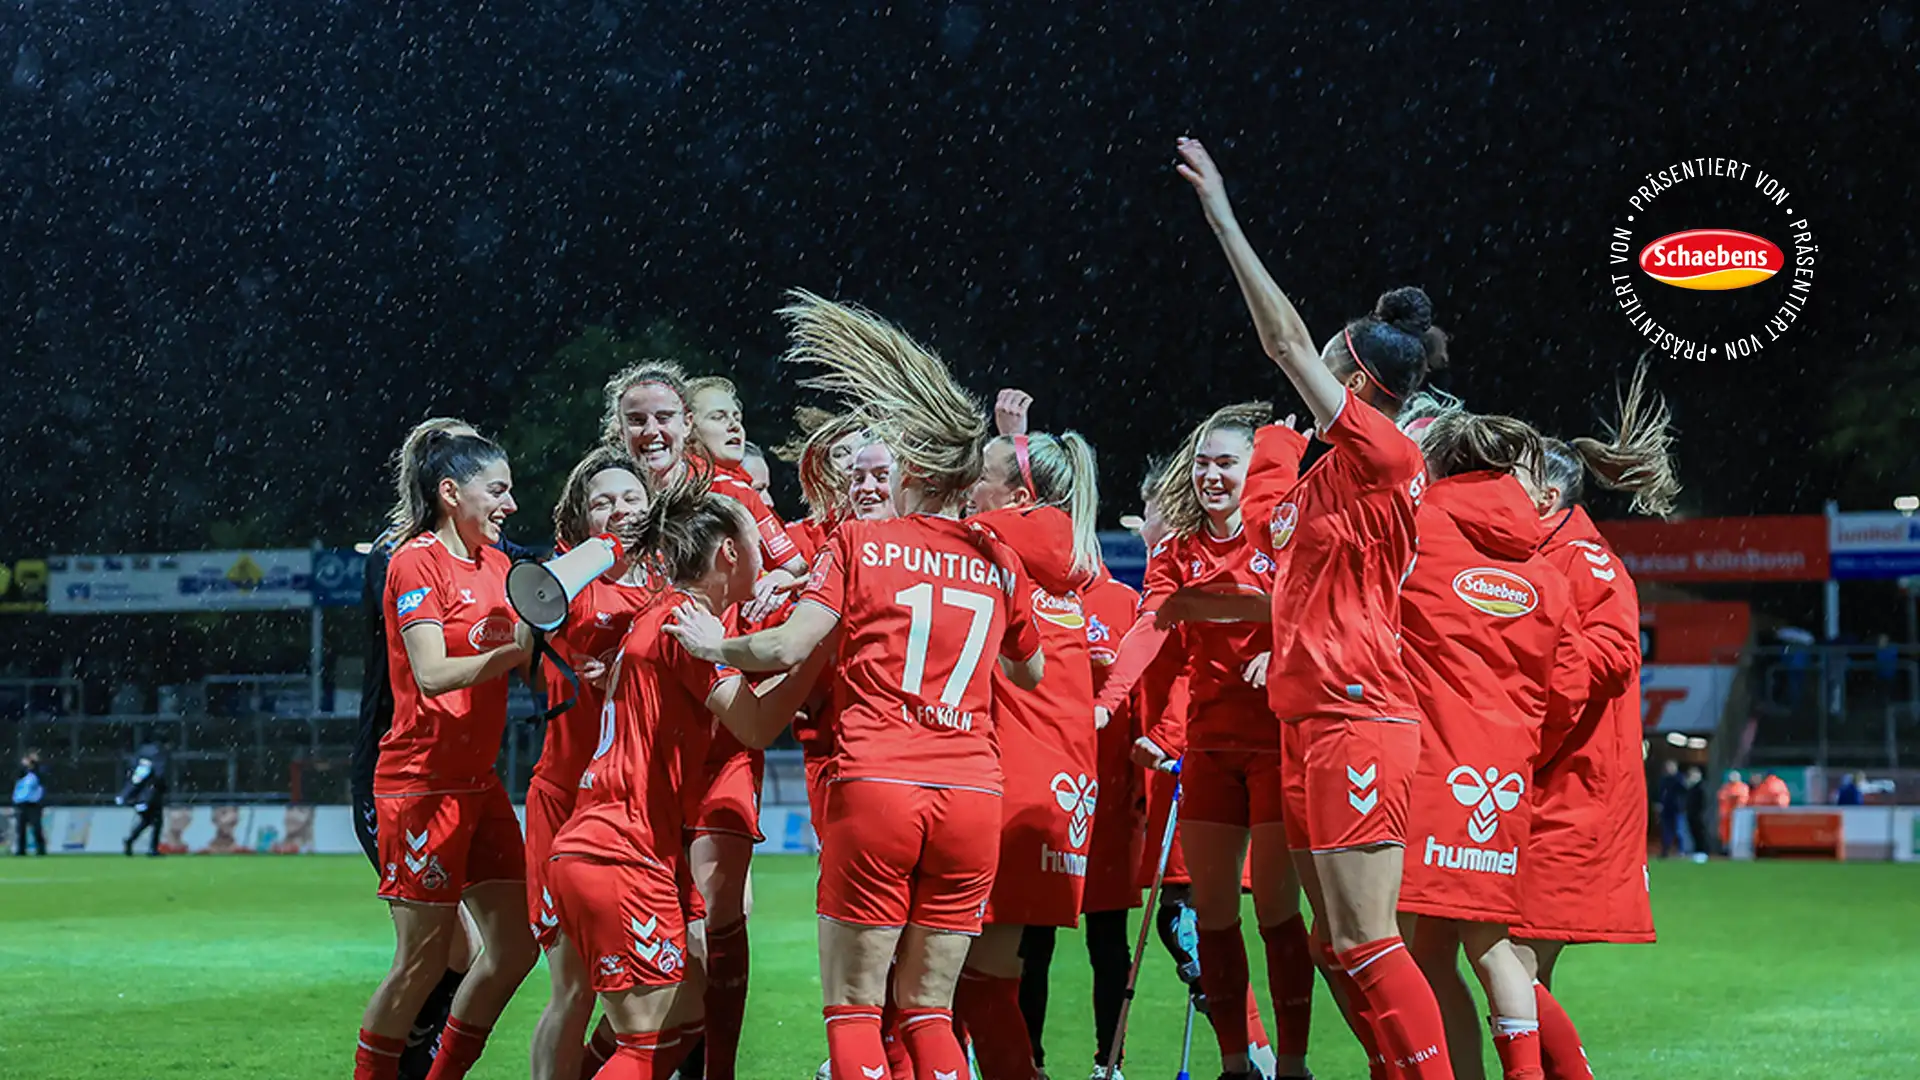 Nach elf sieglosen Partien landeten die FC-Frauen einen wichtigen Sieg gegen Duisburg. (Foto: IMAGO / Tobias Jenatschek)